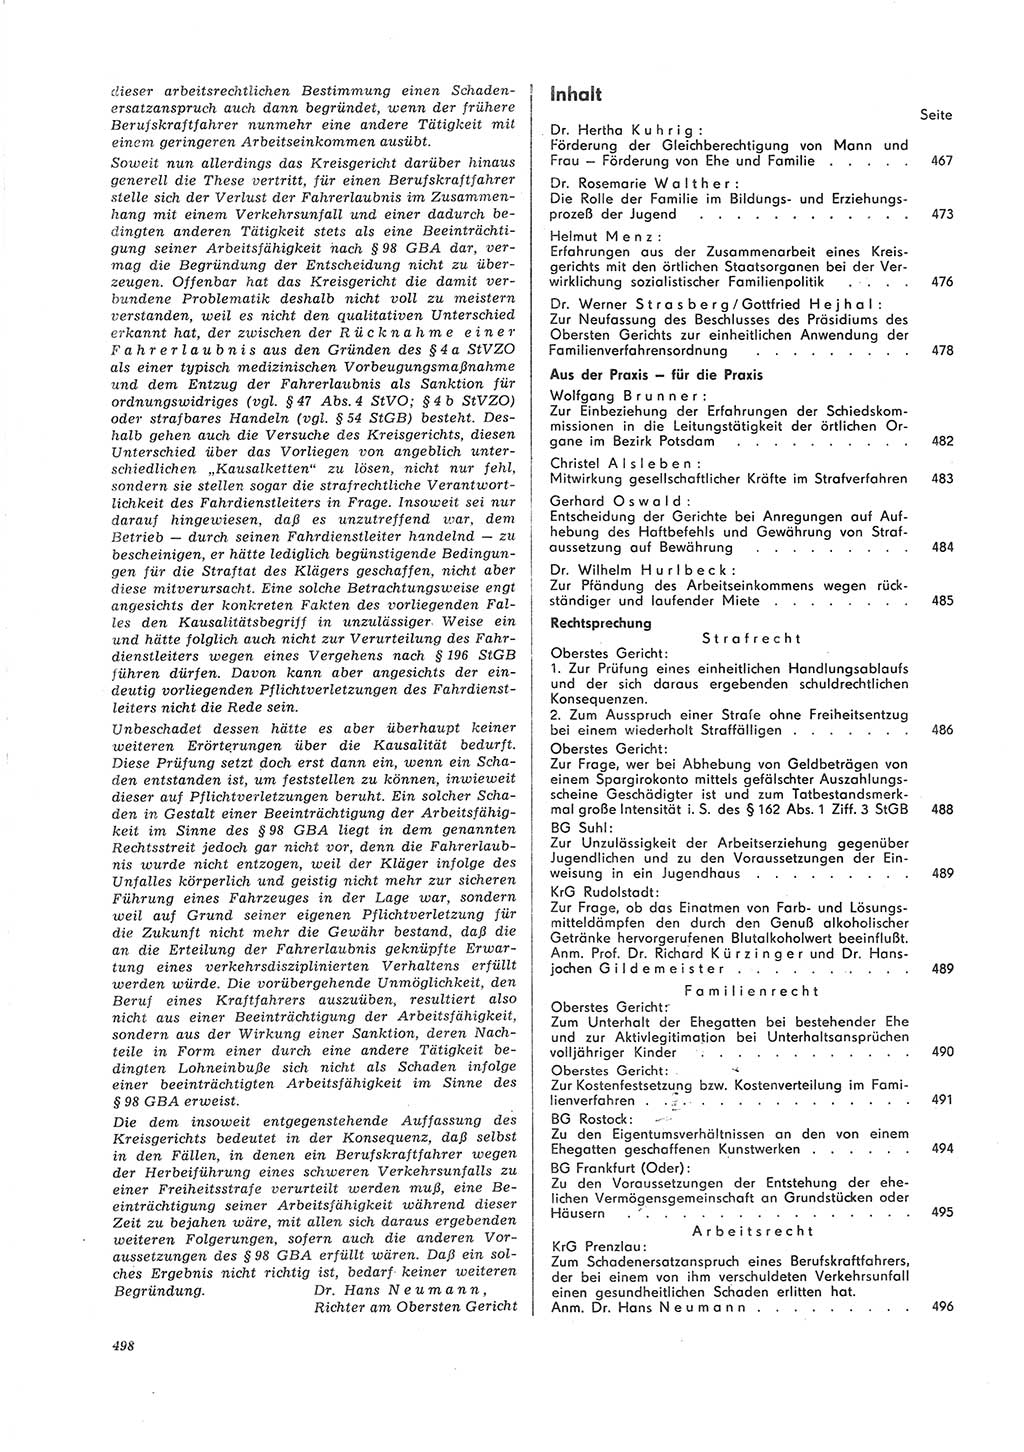 Neue Justiz (NJ), Zeitschrift für Recht und Rechtswissenschaft [Deutsche Demokratische Republik (DDR)], 26. Jahrgang 1972, Seite 498 (NJ DDR 1972, S. 498)